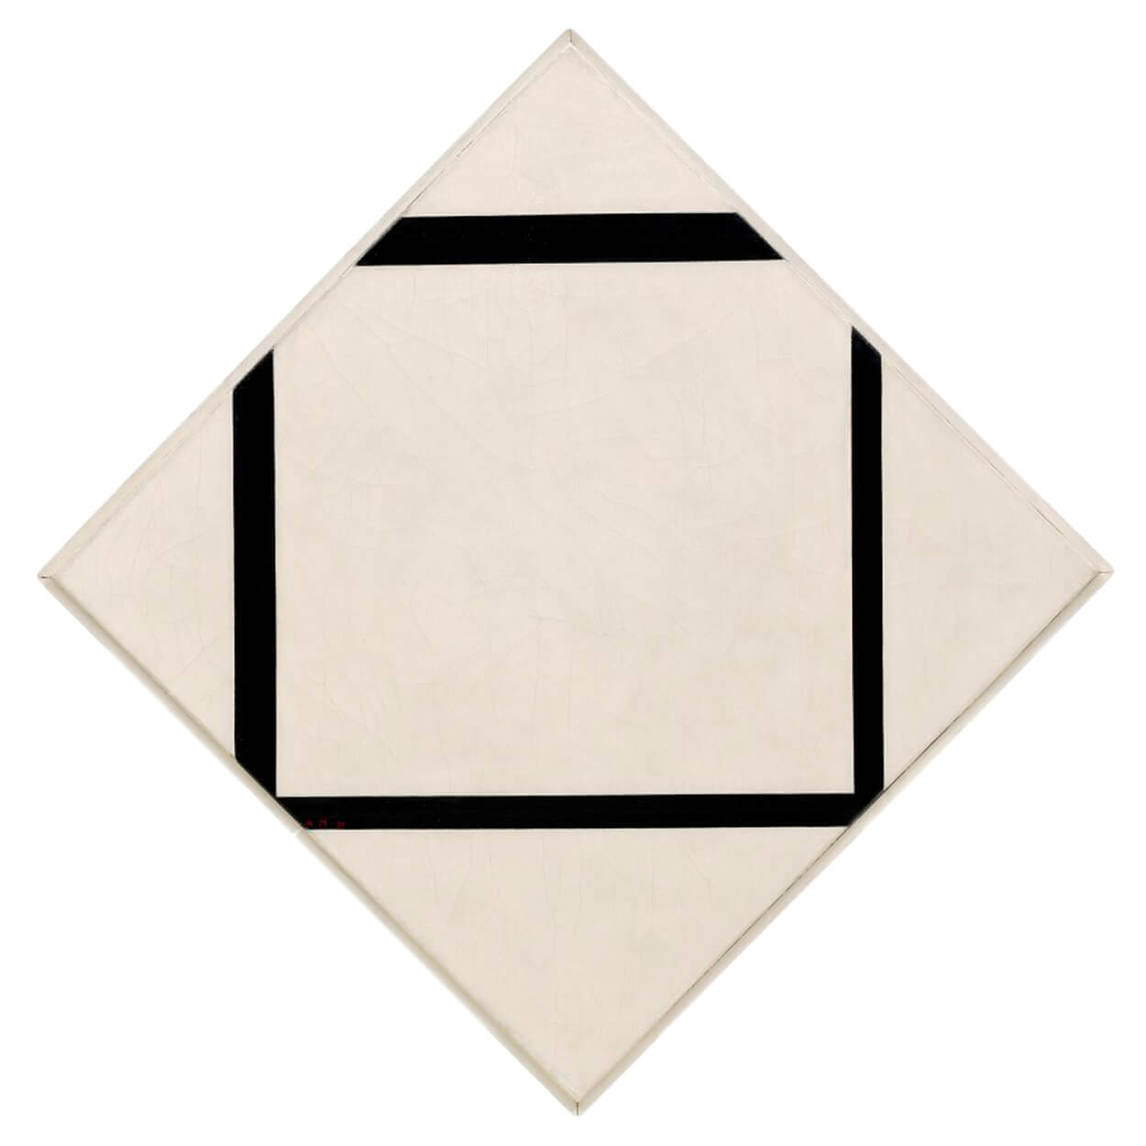 Piet Mondrian, Composition No. 1 Lozenge with Four Lines, 1930